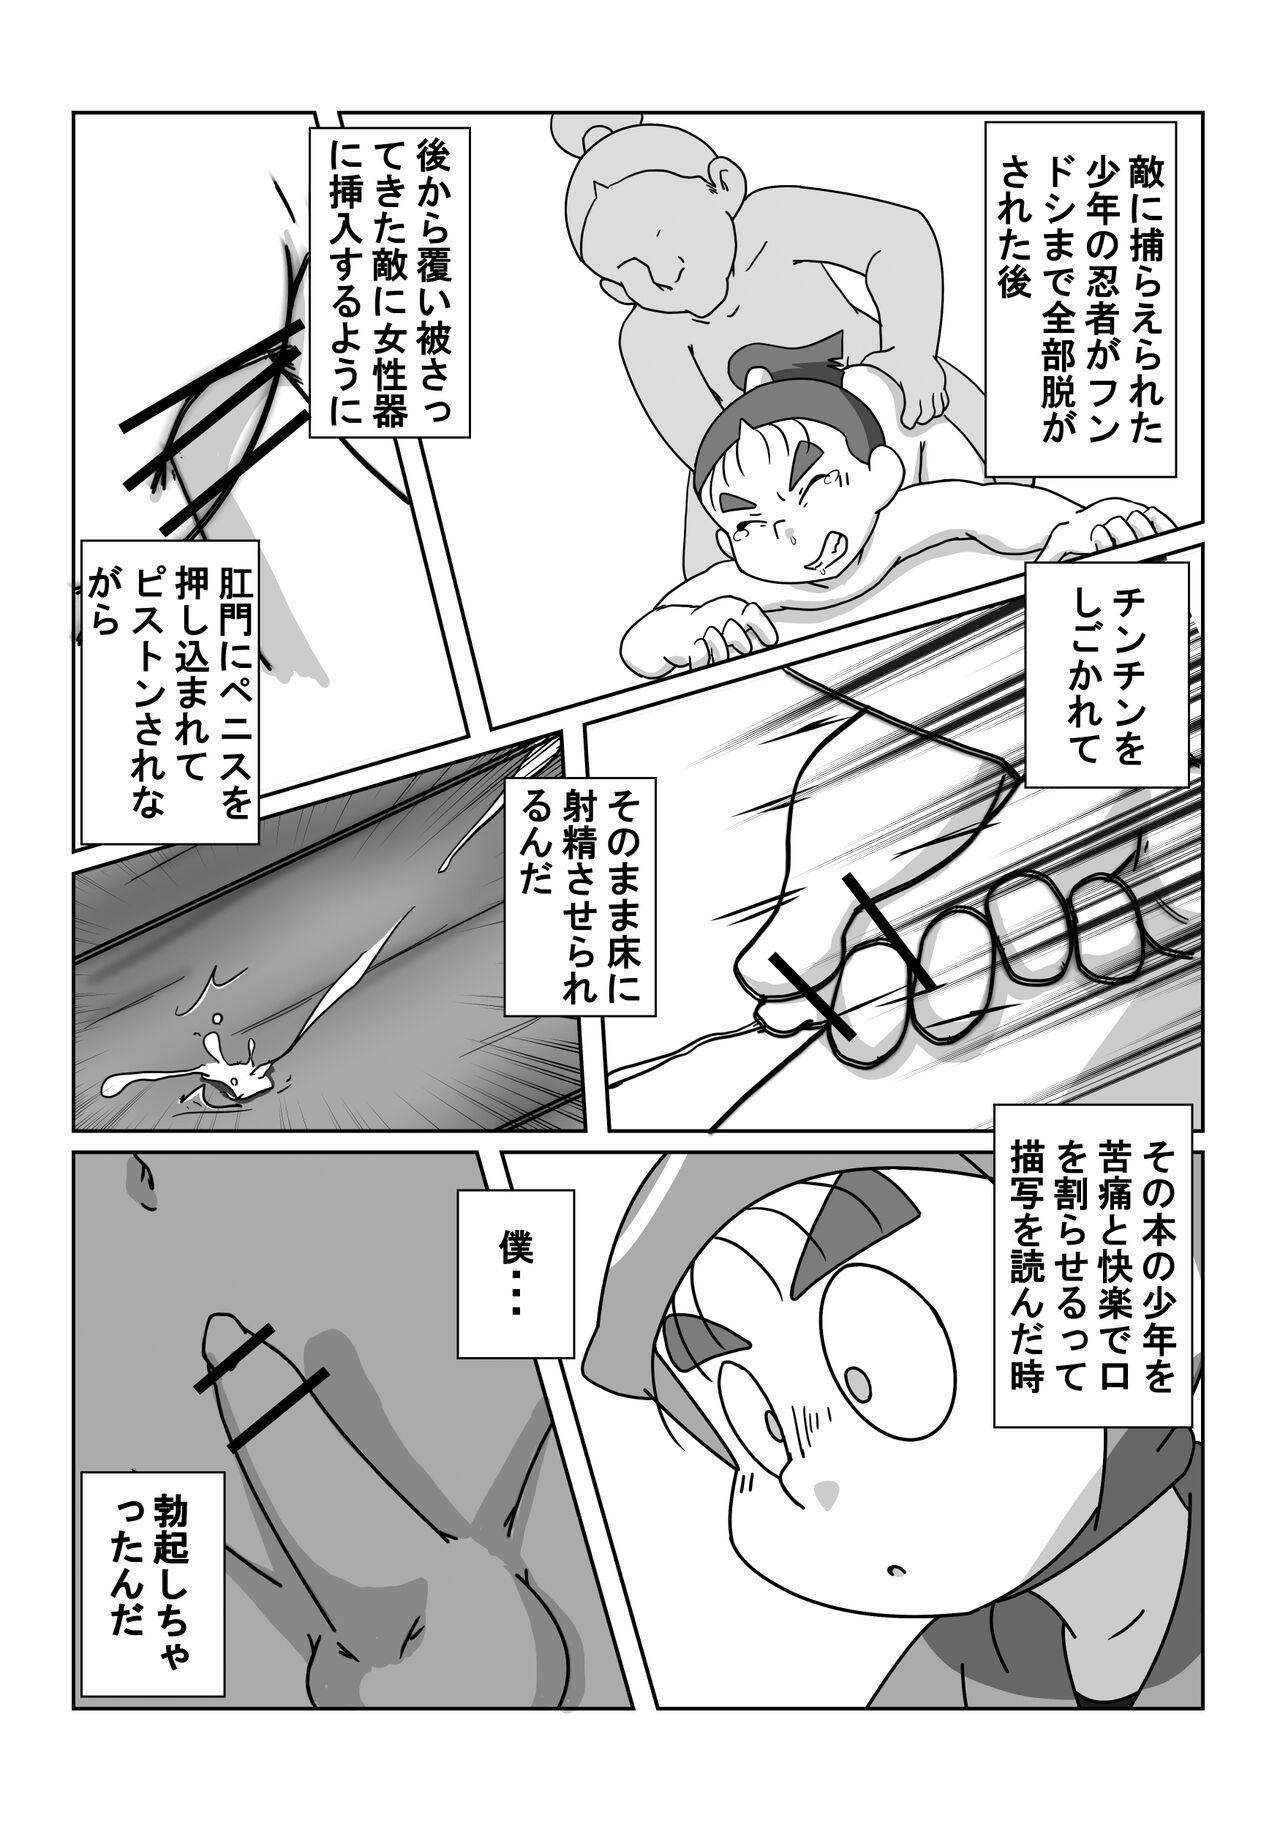 Twerking Ninjutsu Gakuen ni Bokutachi Futarikiri - Part 2 - Nintama rantarou Sexcams - Page 10